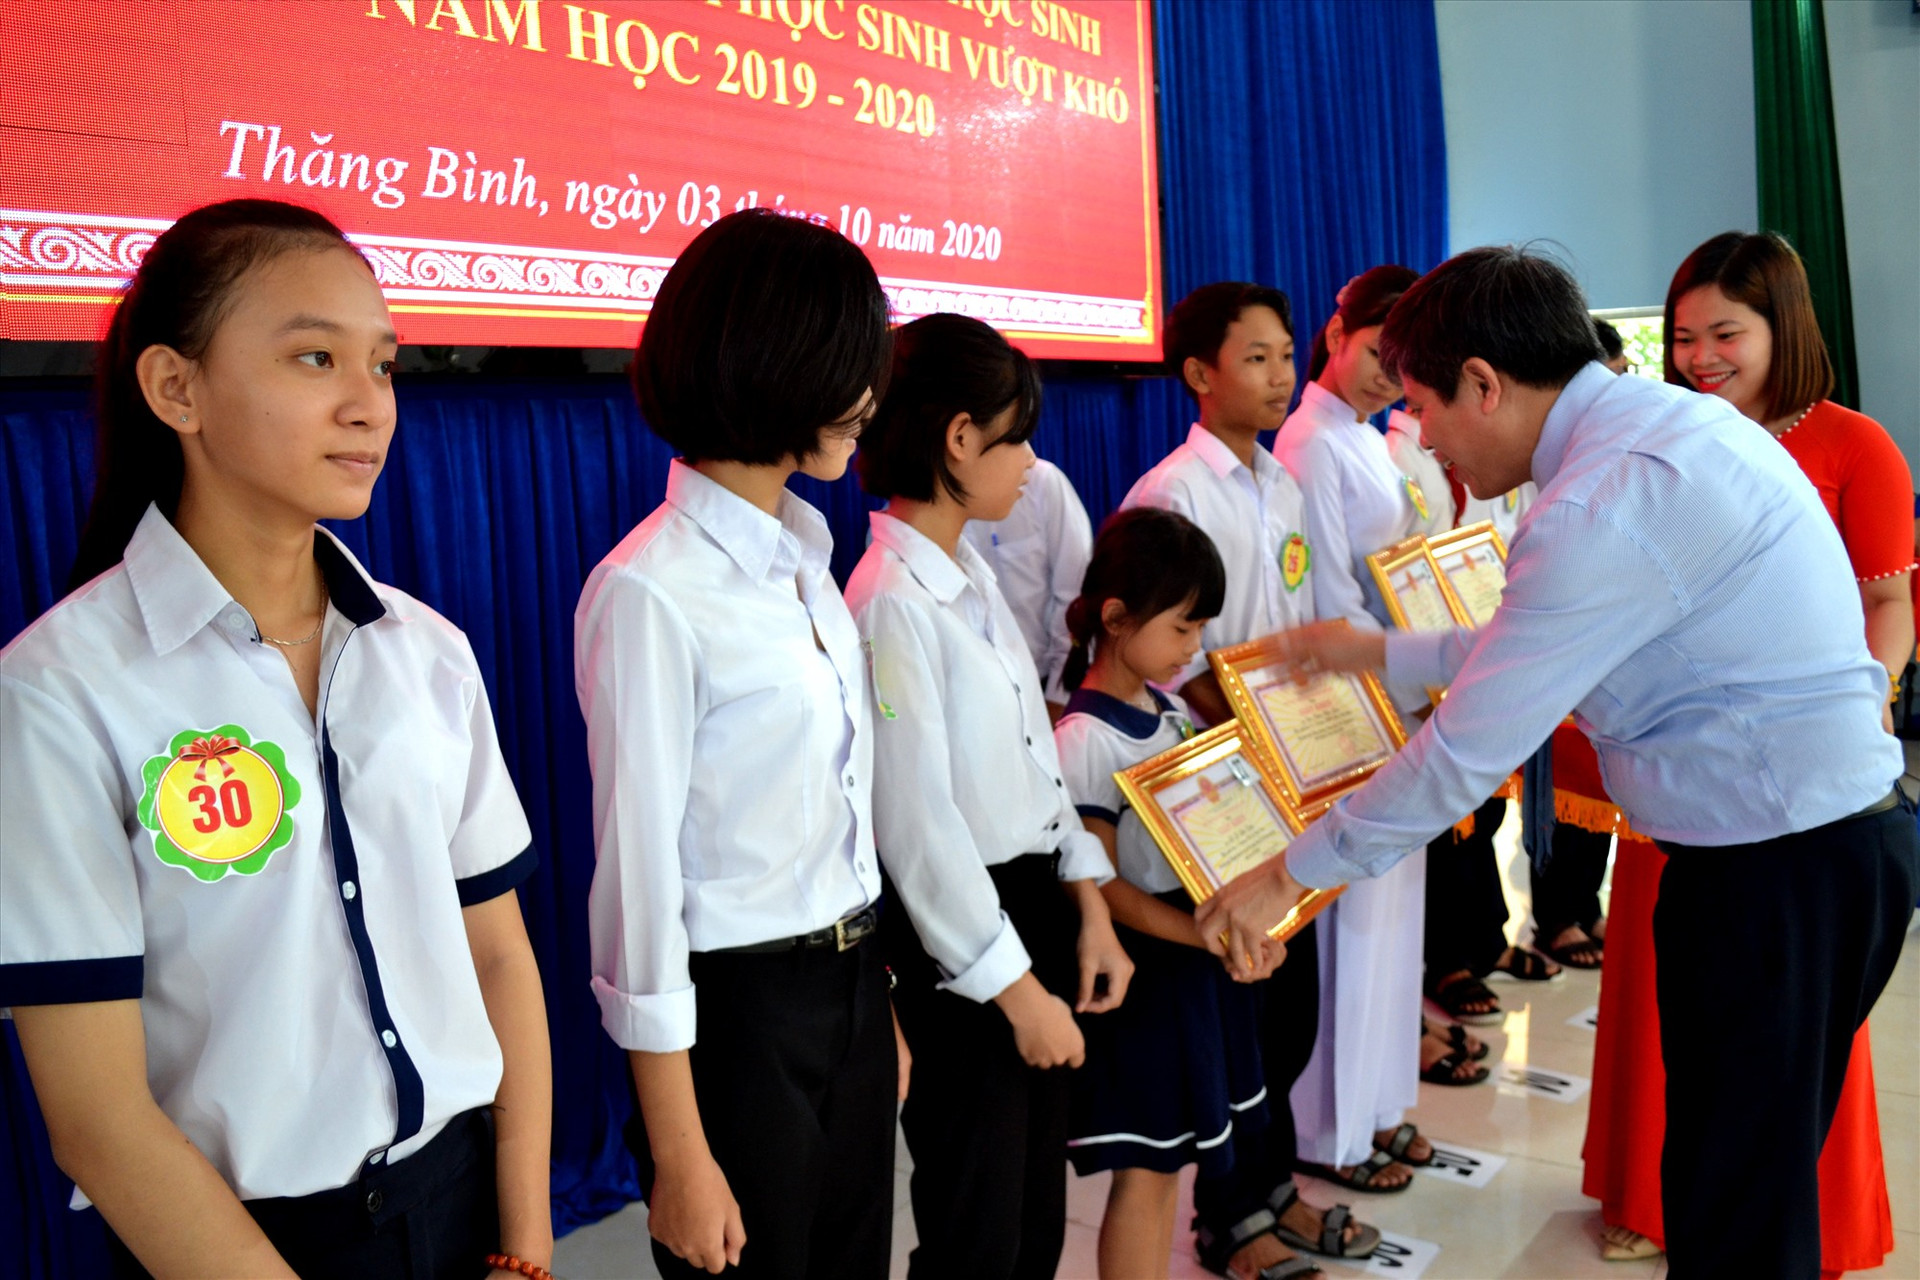 Ông Võ Văn Hùng - Chủ tịch UBND huyện Thăng Bình biểu dương, khen thưởng học sinh đoạt giải tại các cuộc thi cấp quốc gia, tỉnh, huyện trong năm học 2019 - 2020. Ảnh: VIỆT NGUYỄN